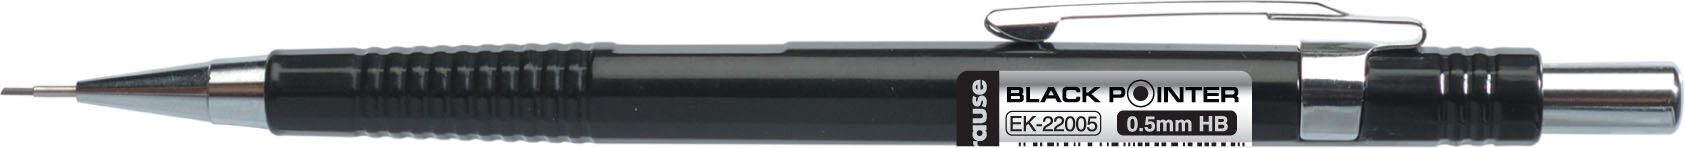 Automātisks zīmulis ERICH KRAUSE Black pointer, melns korpuss, 0,5 mm cena un informācija | Rakstāmpiederumi | 220.lv